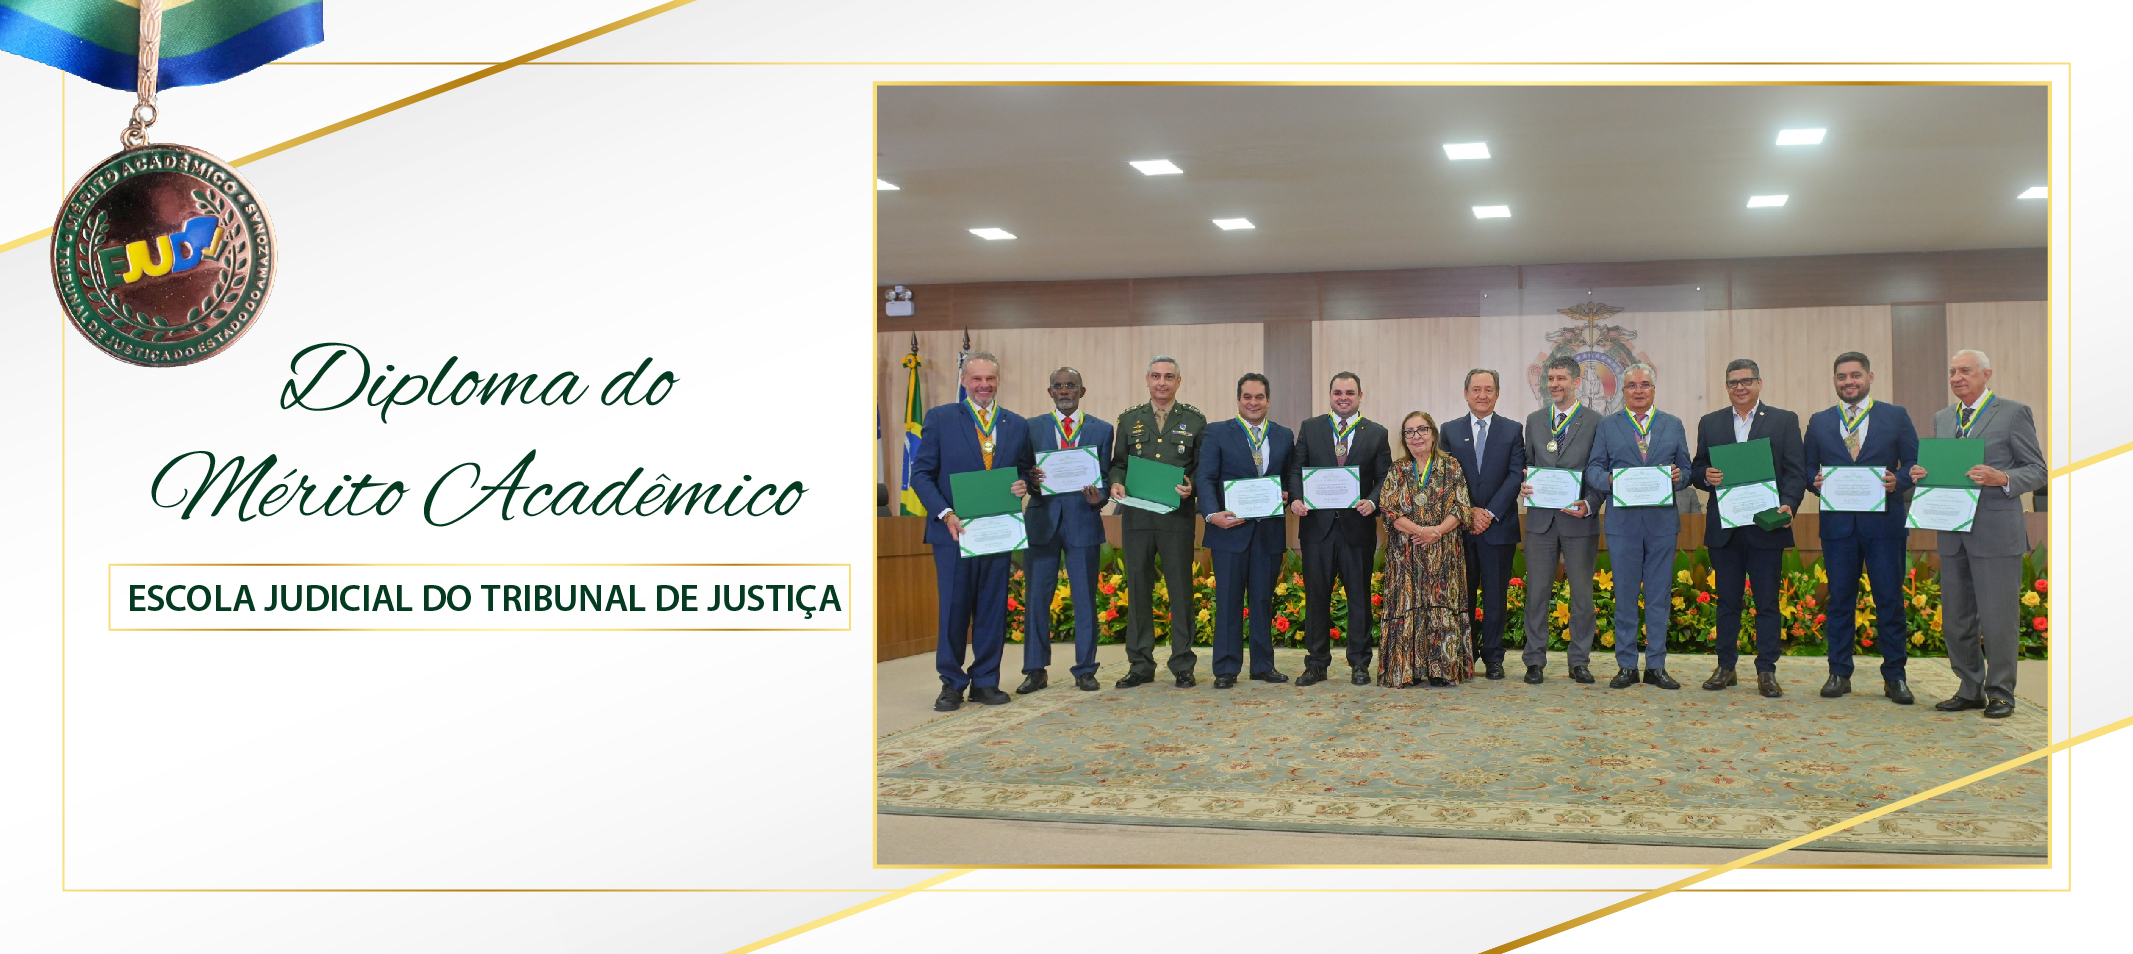 Ufam recebe Medalha do Mérito Acadêmico por contribuir na formação e qualificação de operadores do Direito